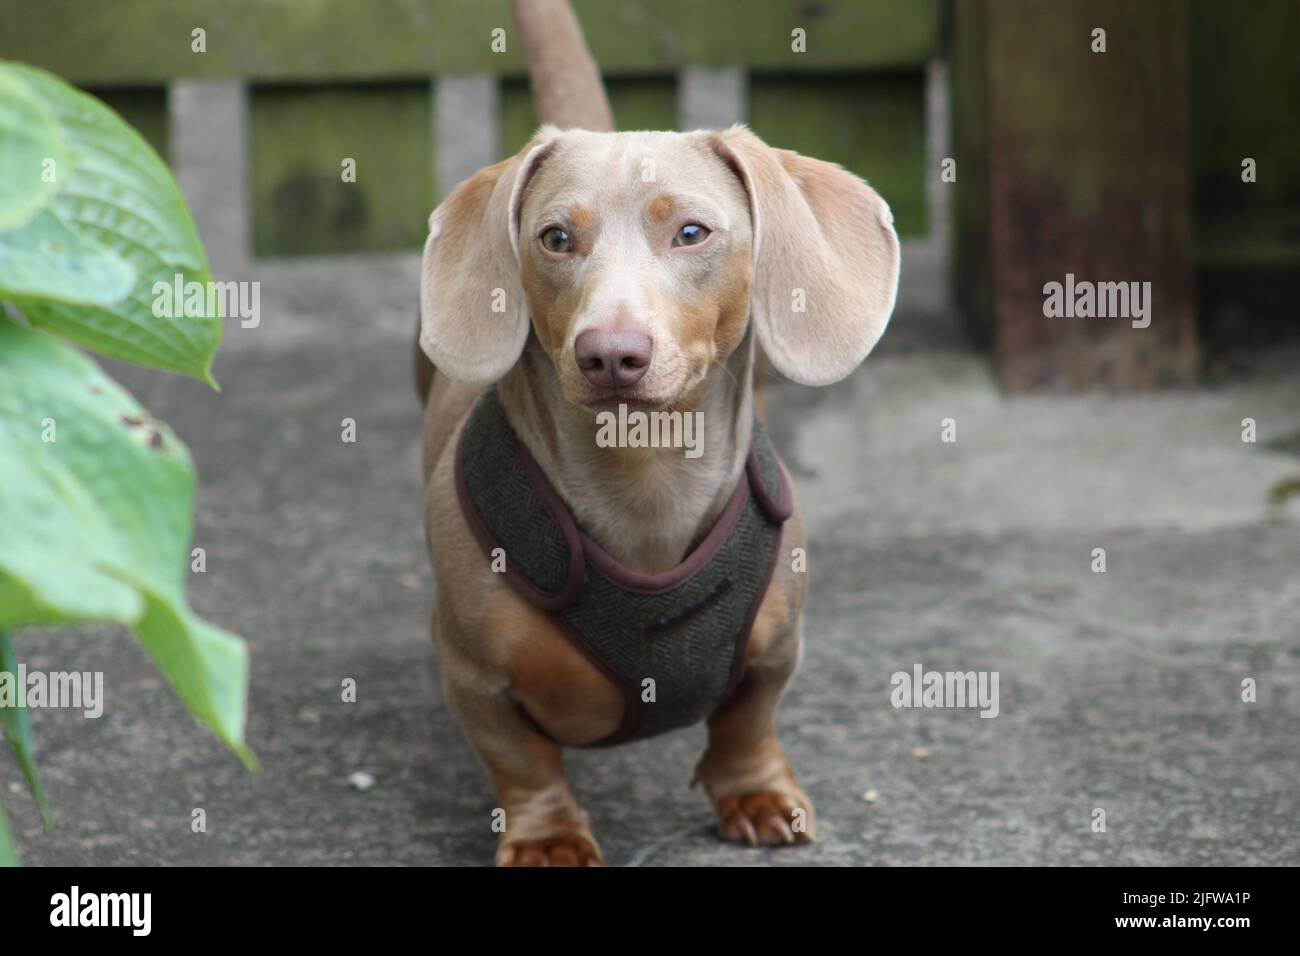 yoshi , cute dachshund 2022 taken in south wales Stock Photo